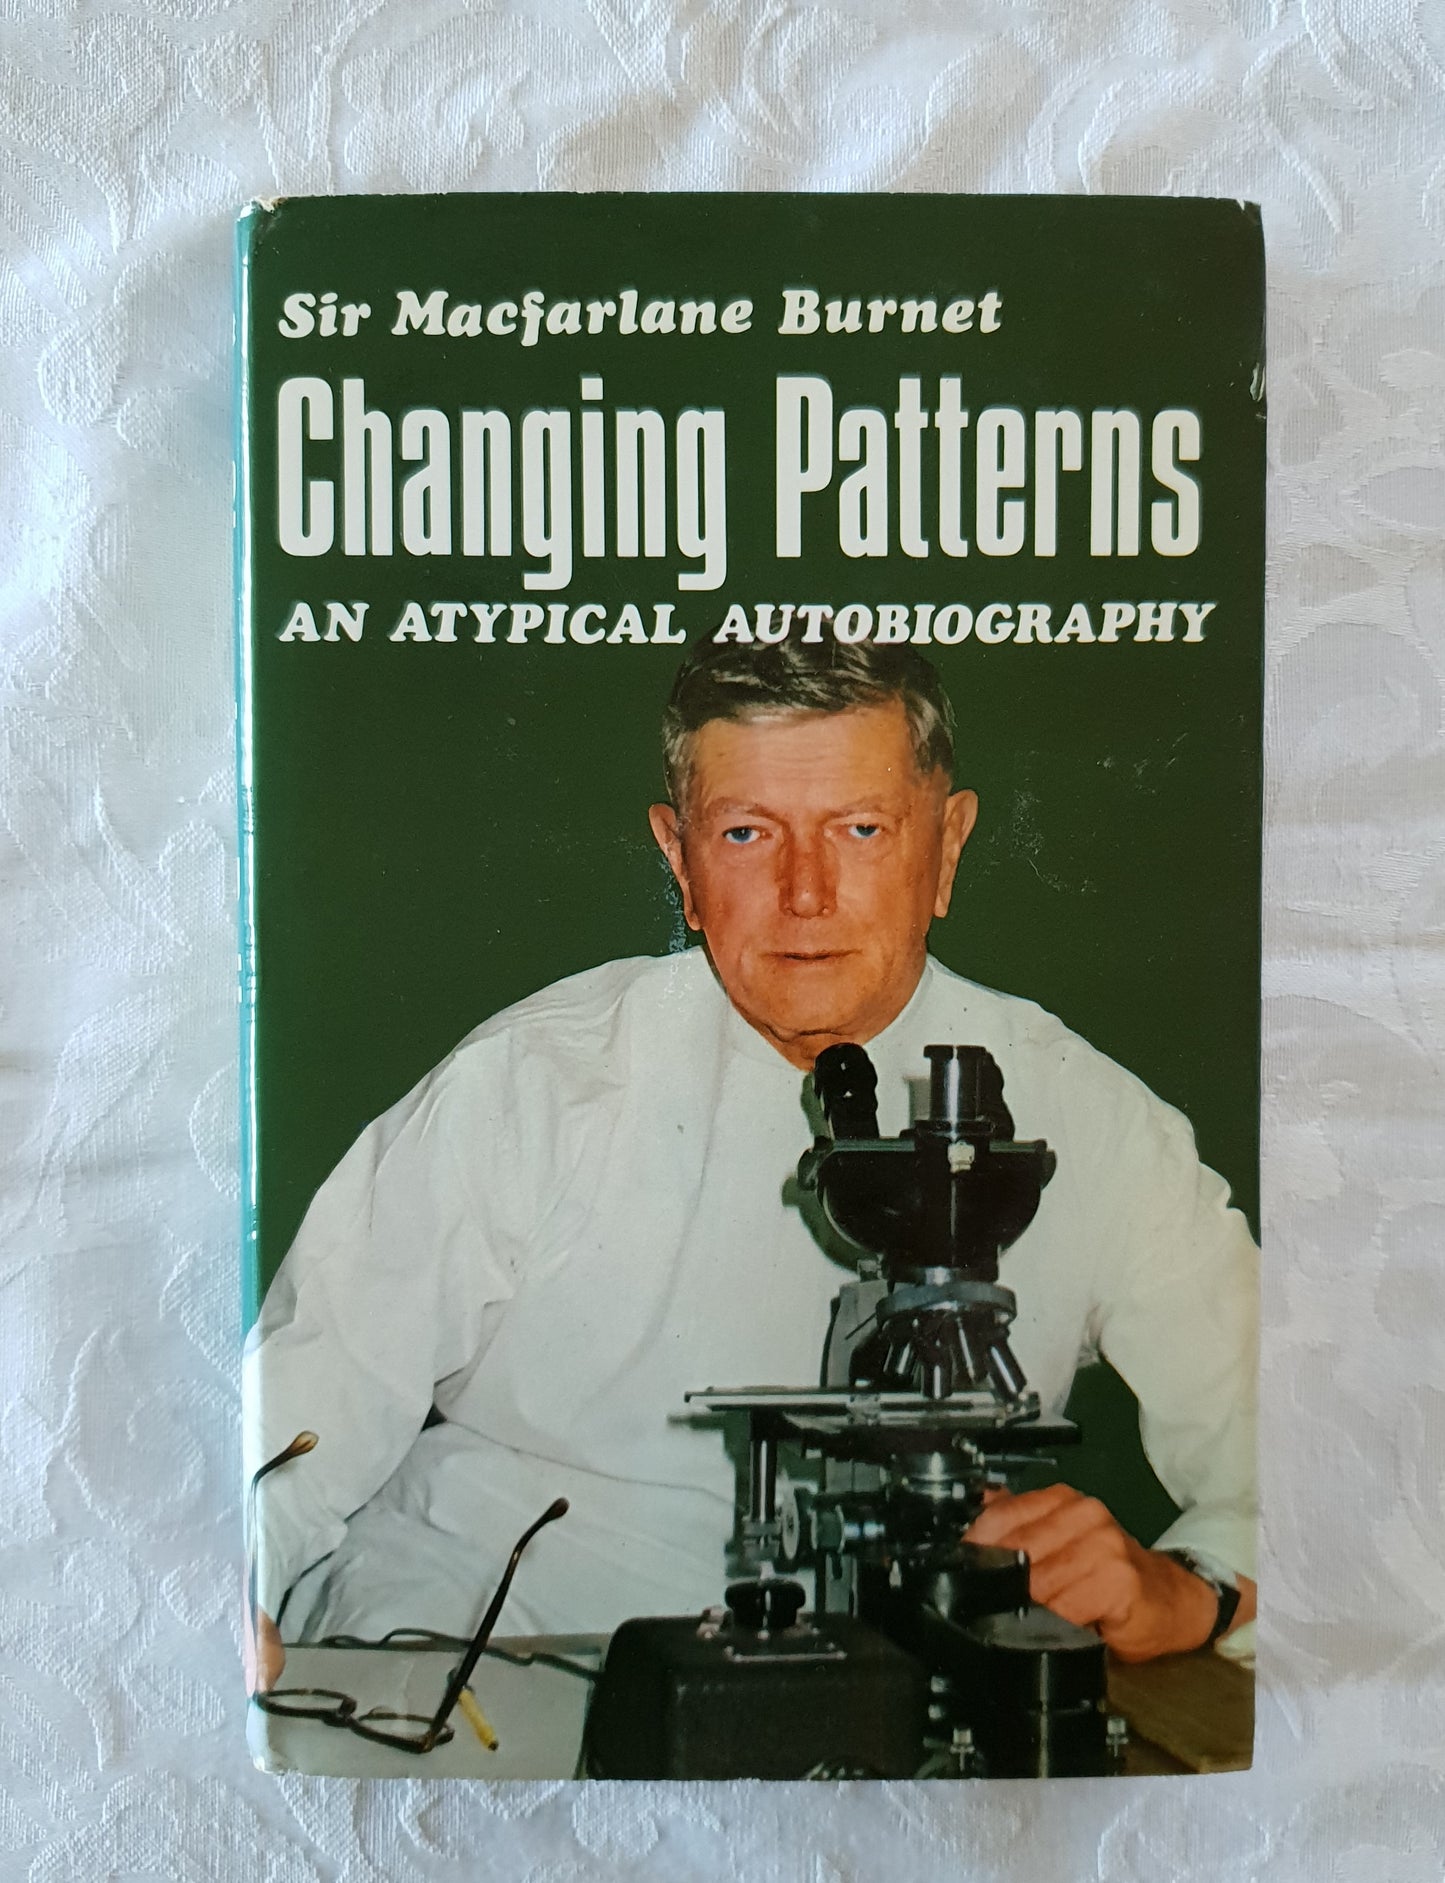 Changing Patterns by Sir Macfarlane Burnet